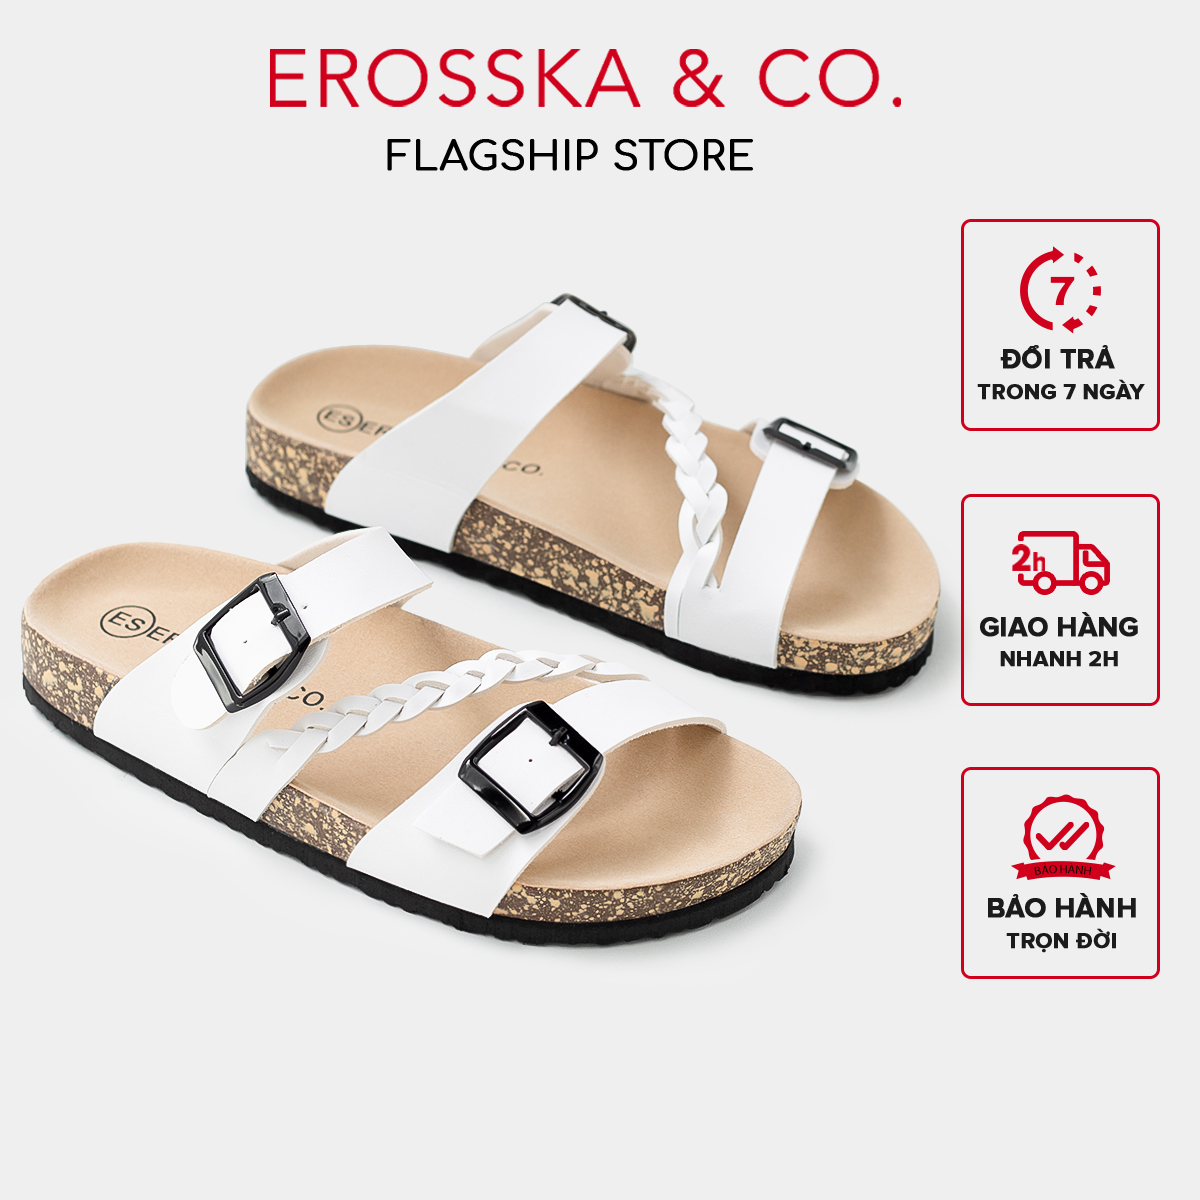 Dép Birken quai thắt bím thời trang Erosska màu trắng - DT011